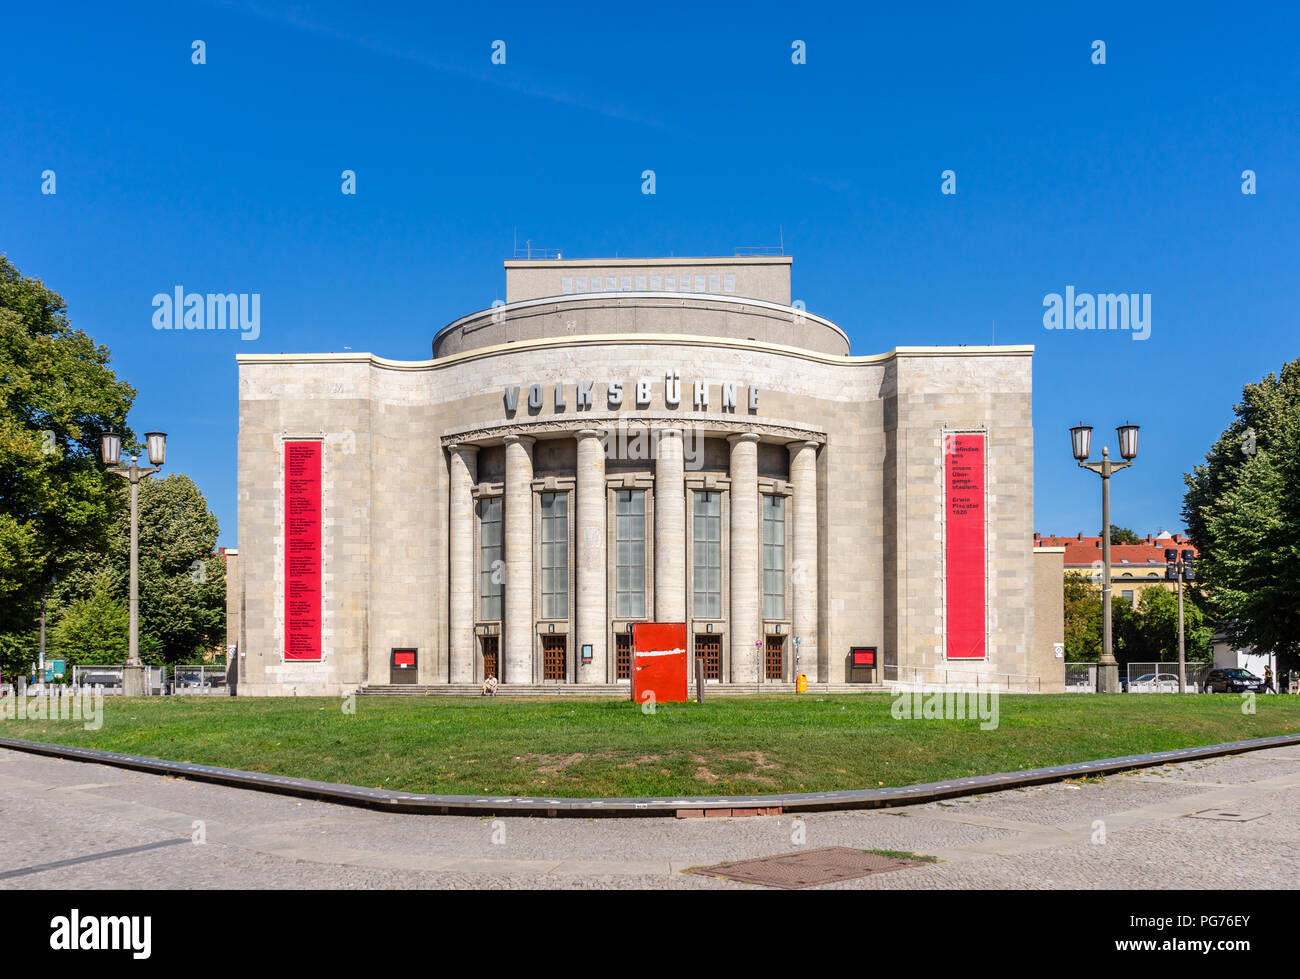 Il popolo del teatro (Volksbuehne) in Berlin Mitte district, un iconico teatro edificato 1913-1914 vicino a Rosa-Luxemburg Platz, Berlin, Germania Foto Stock